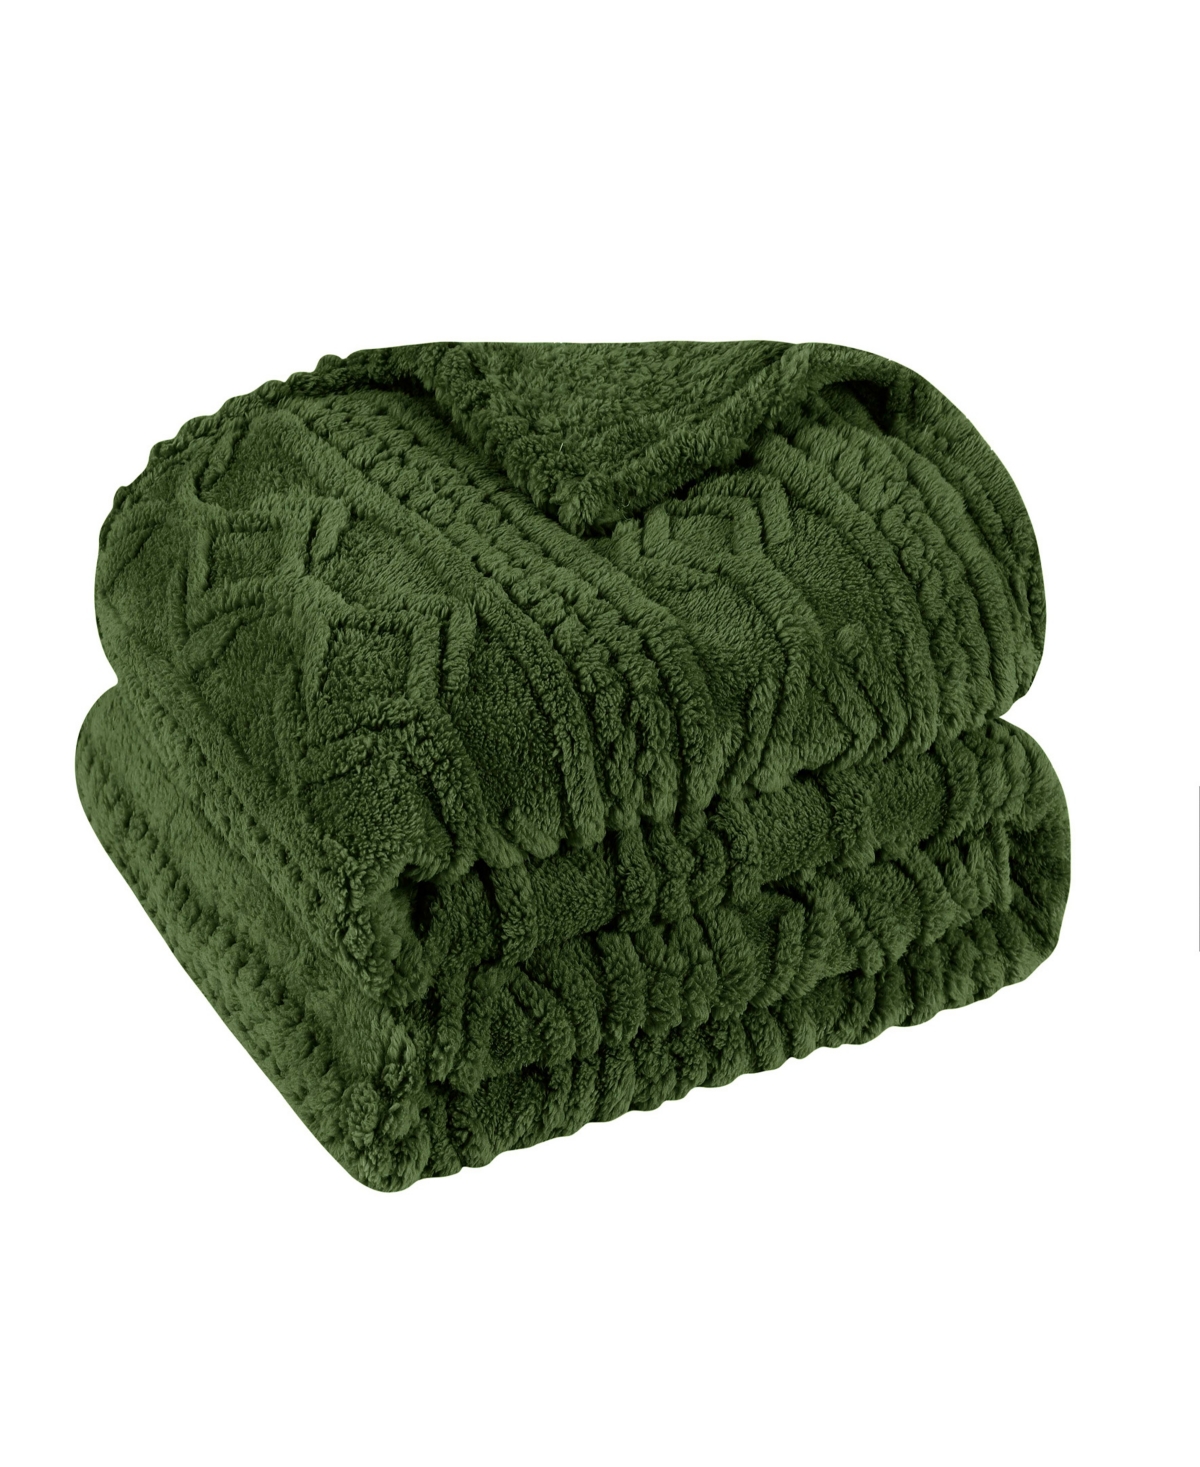 Superior Boho Knit Jacquard Fleece Plush Fluffy Blanket, Full/queen In Green